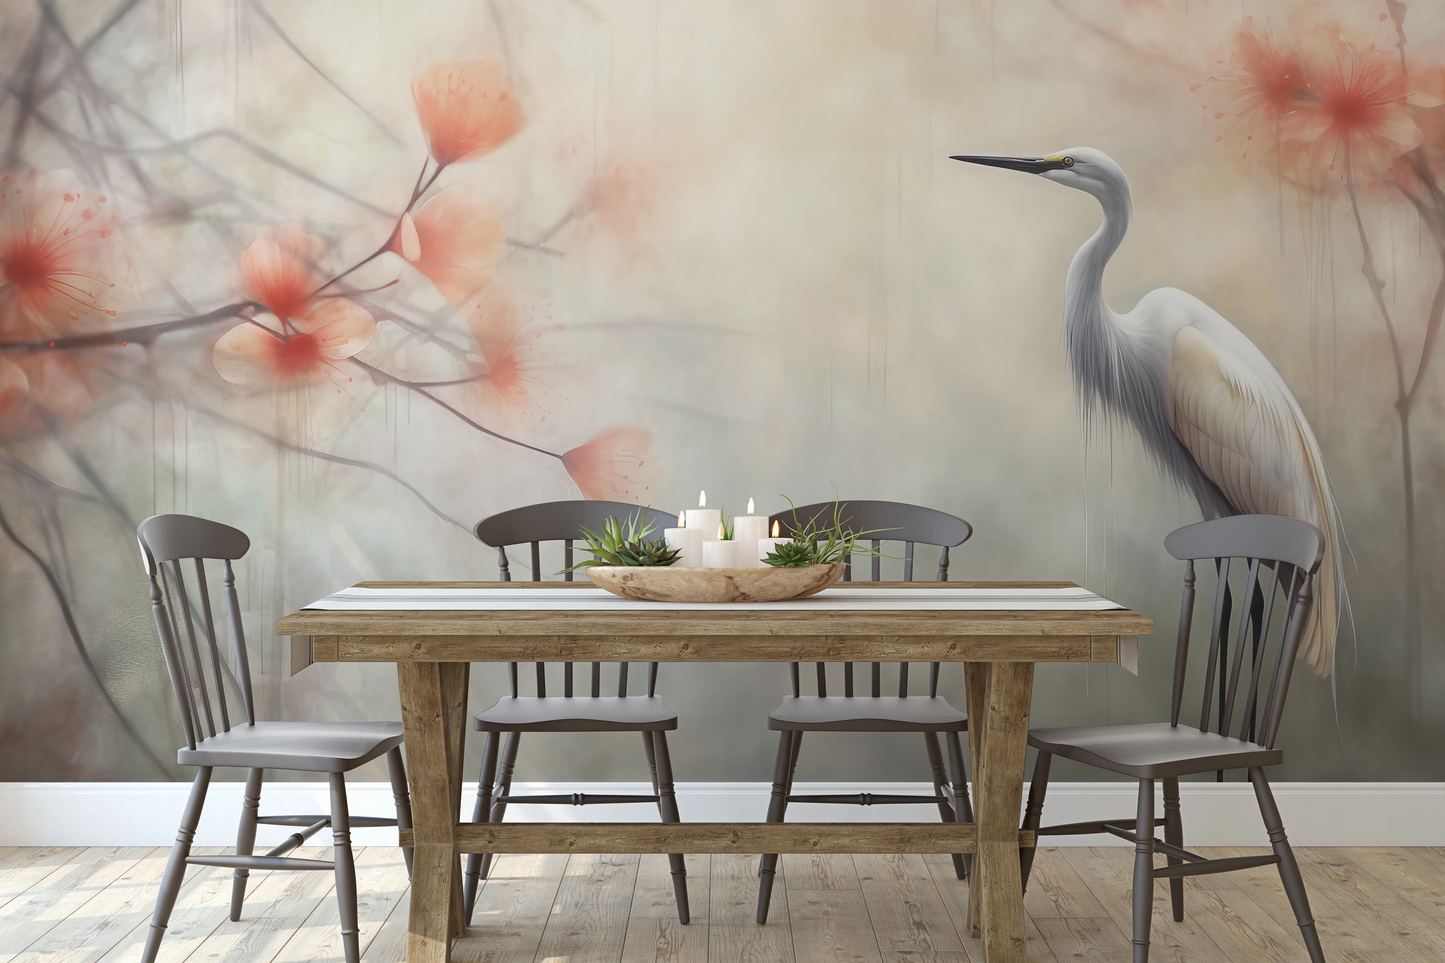 Wzór fototapety malowanej o nazwie Serene Heron pokazanej w aranżacji wnętrza.